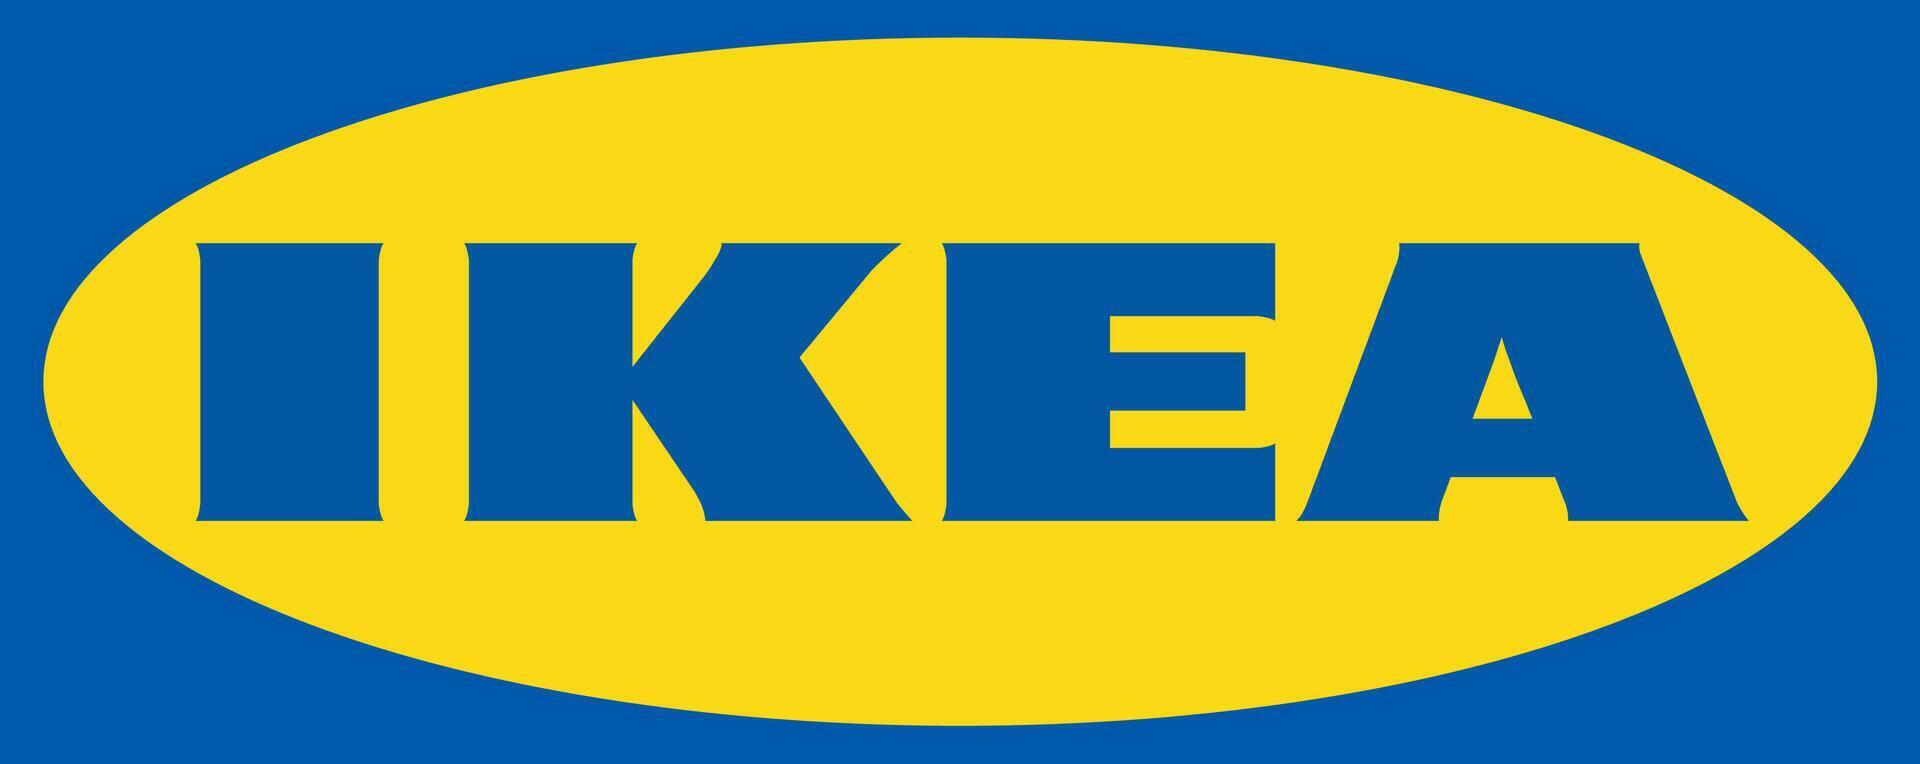 Ikea logotype, logo vecteur